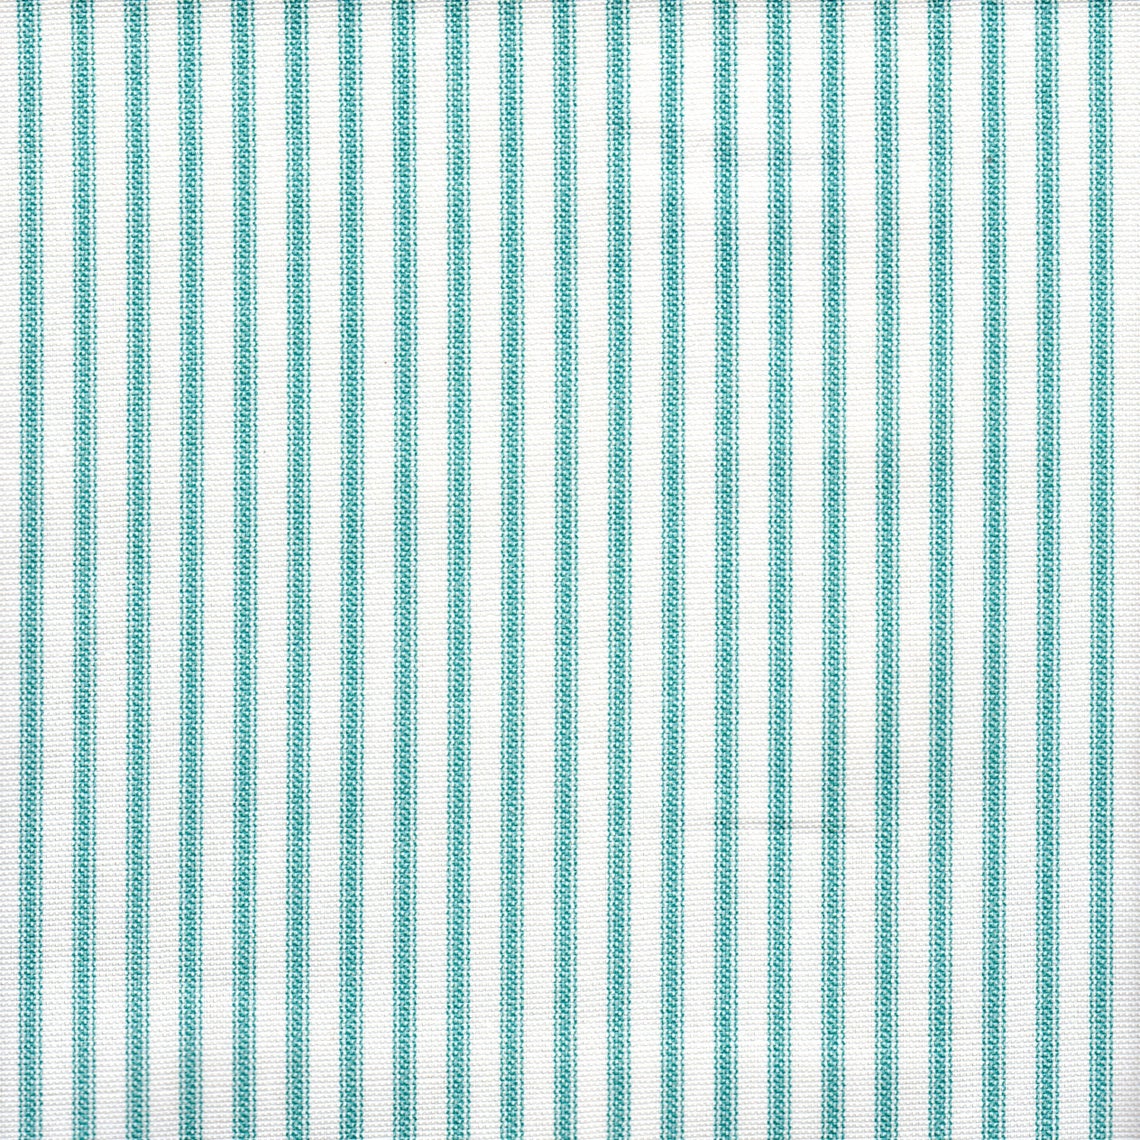 pinch pleated curtains in farmhouse aqua blue ticking stripe